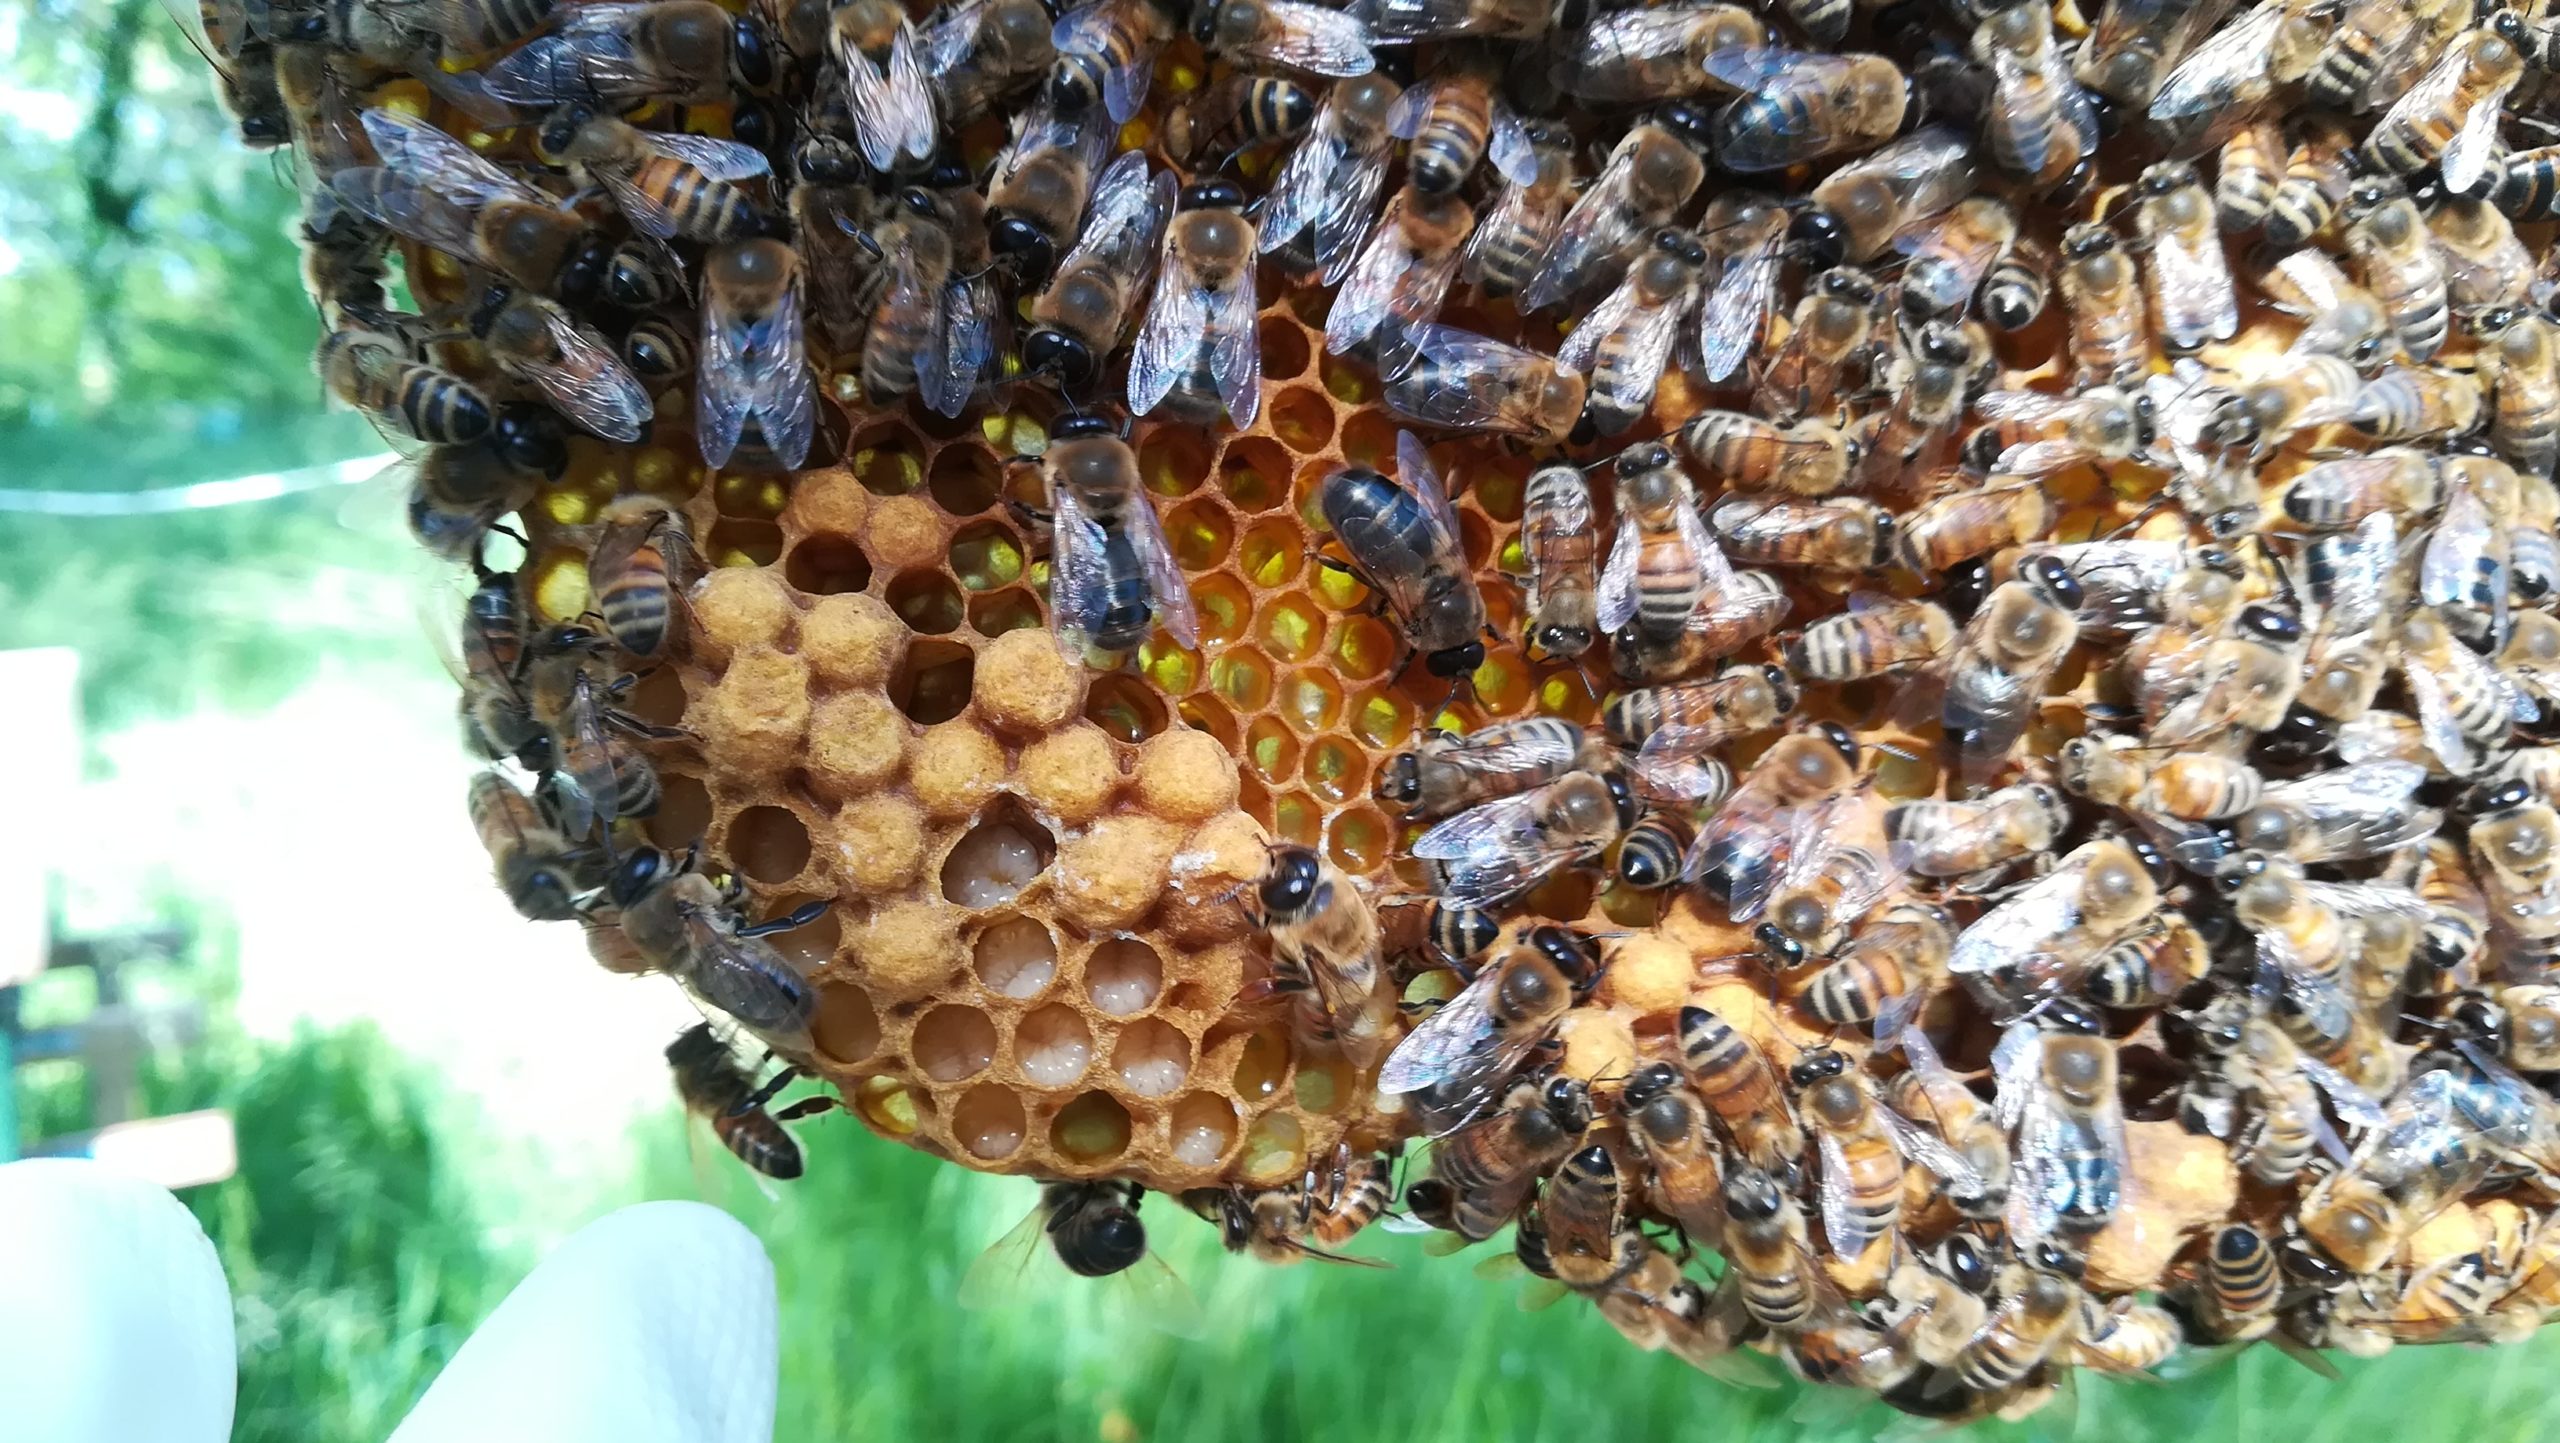 apicoltura urbana